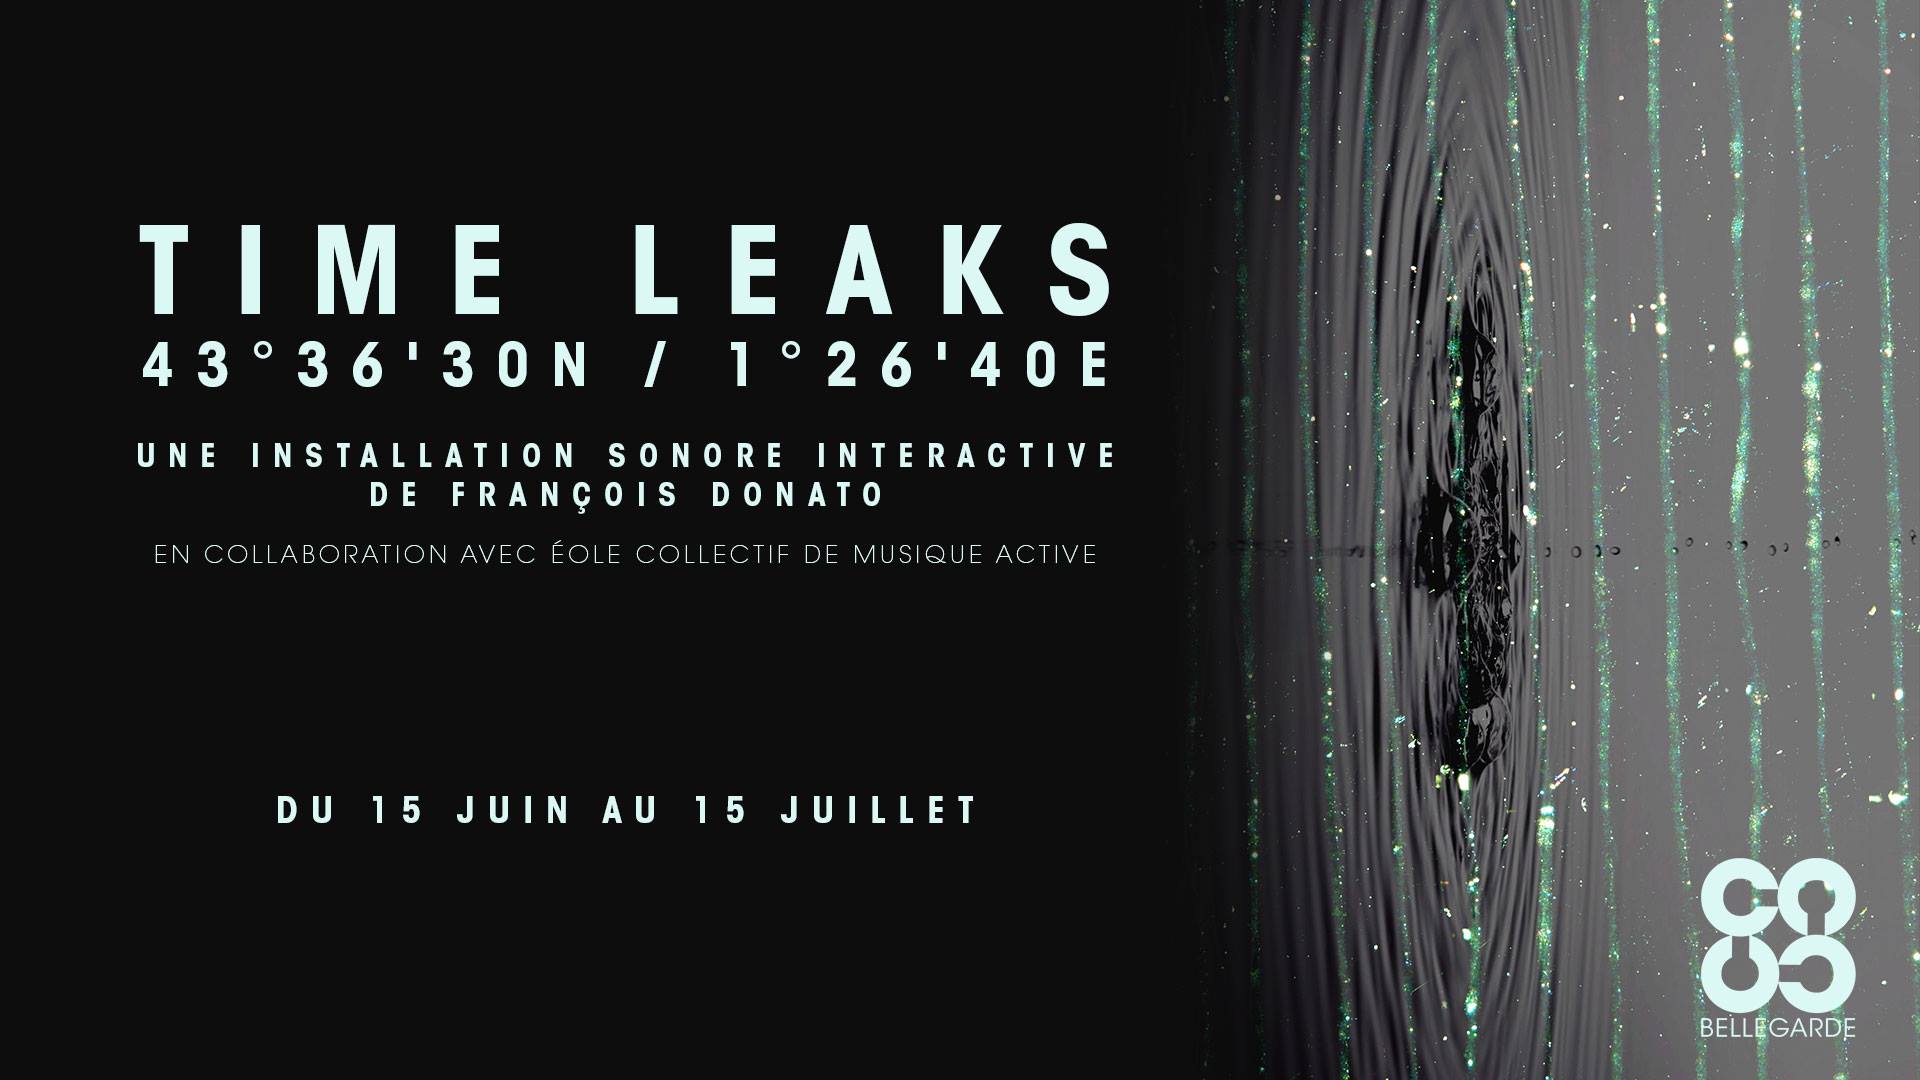 Time Leaks 43°36’30N / 1°26’40E | 15 juin – 15 juillet 2017